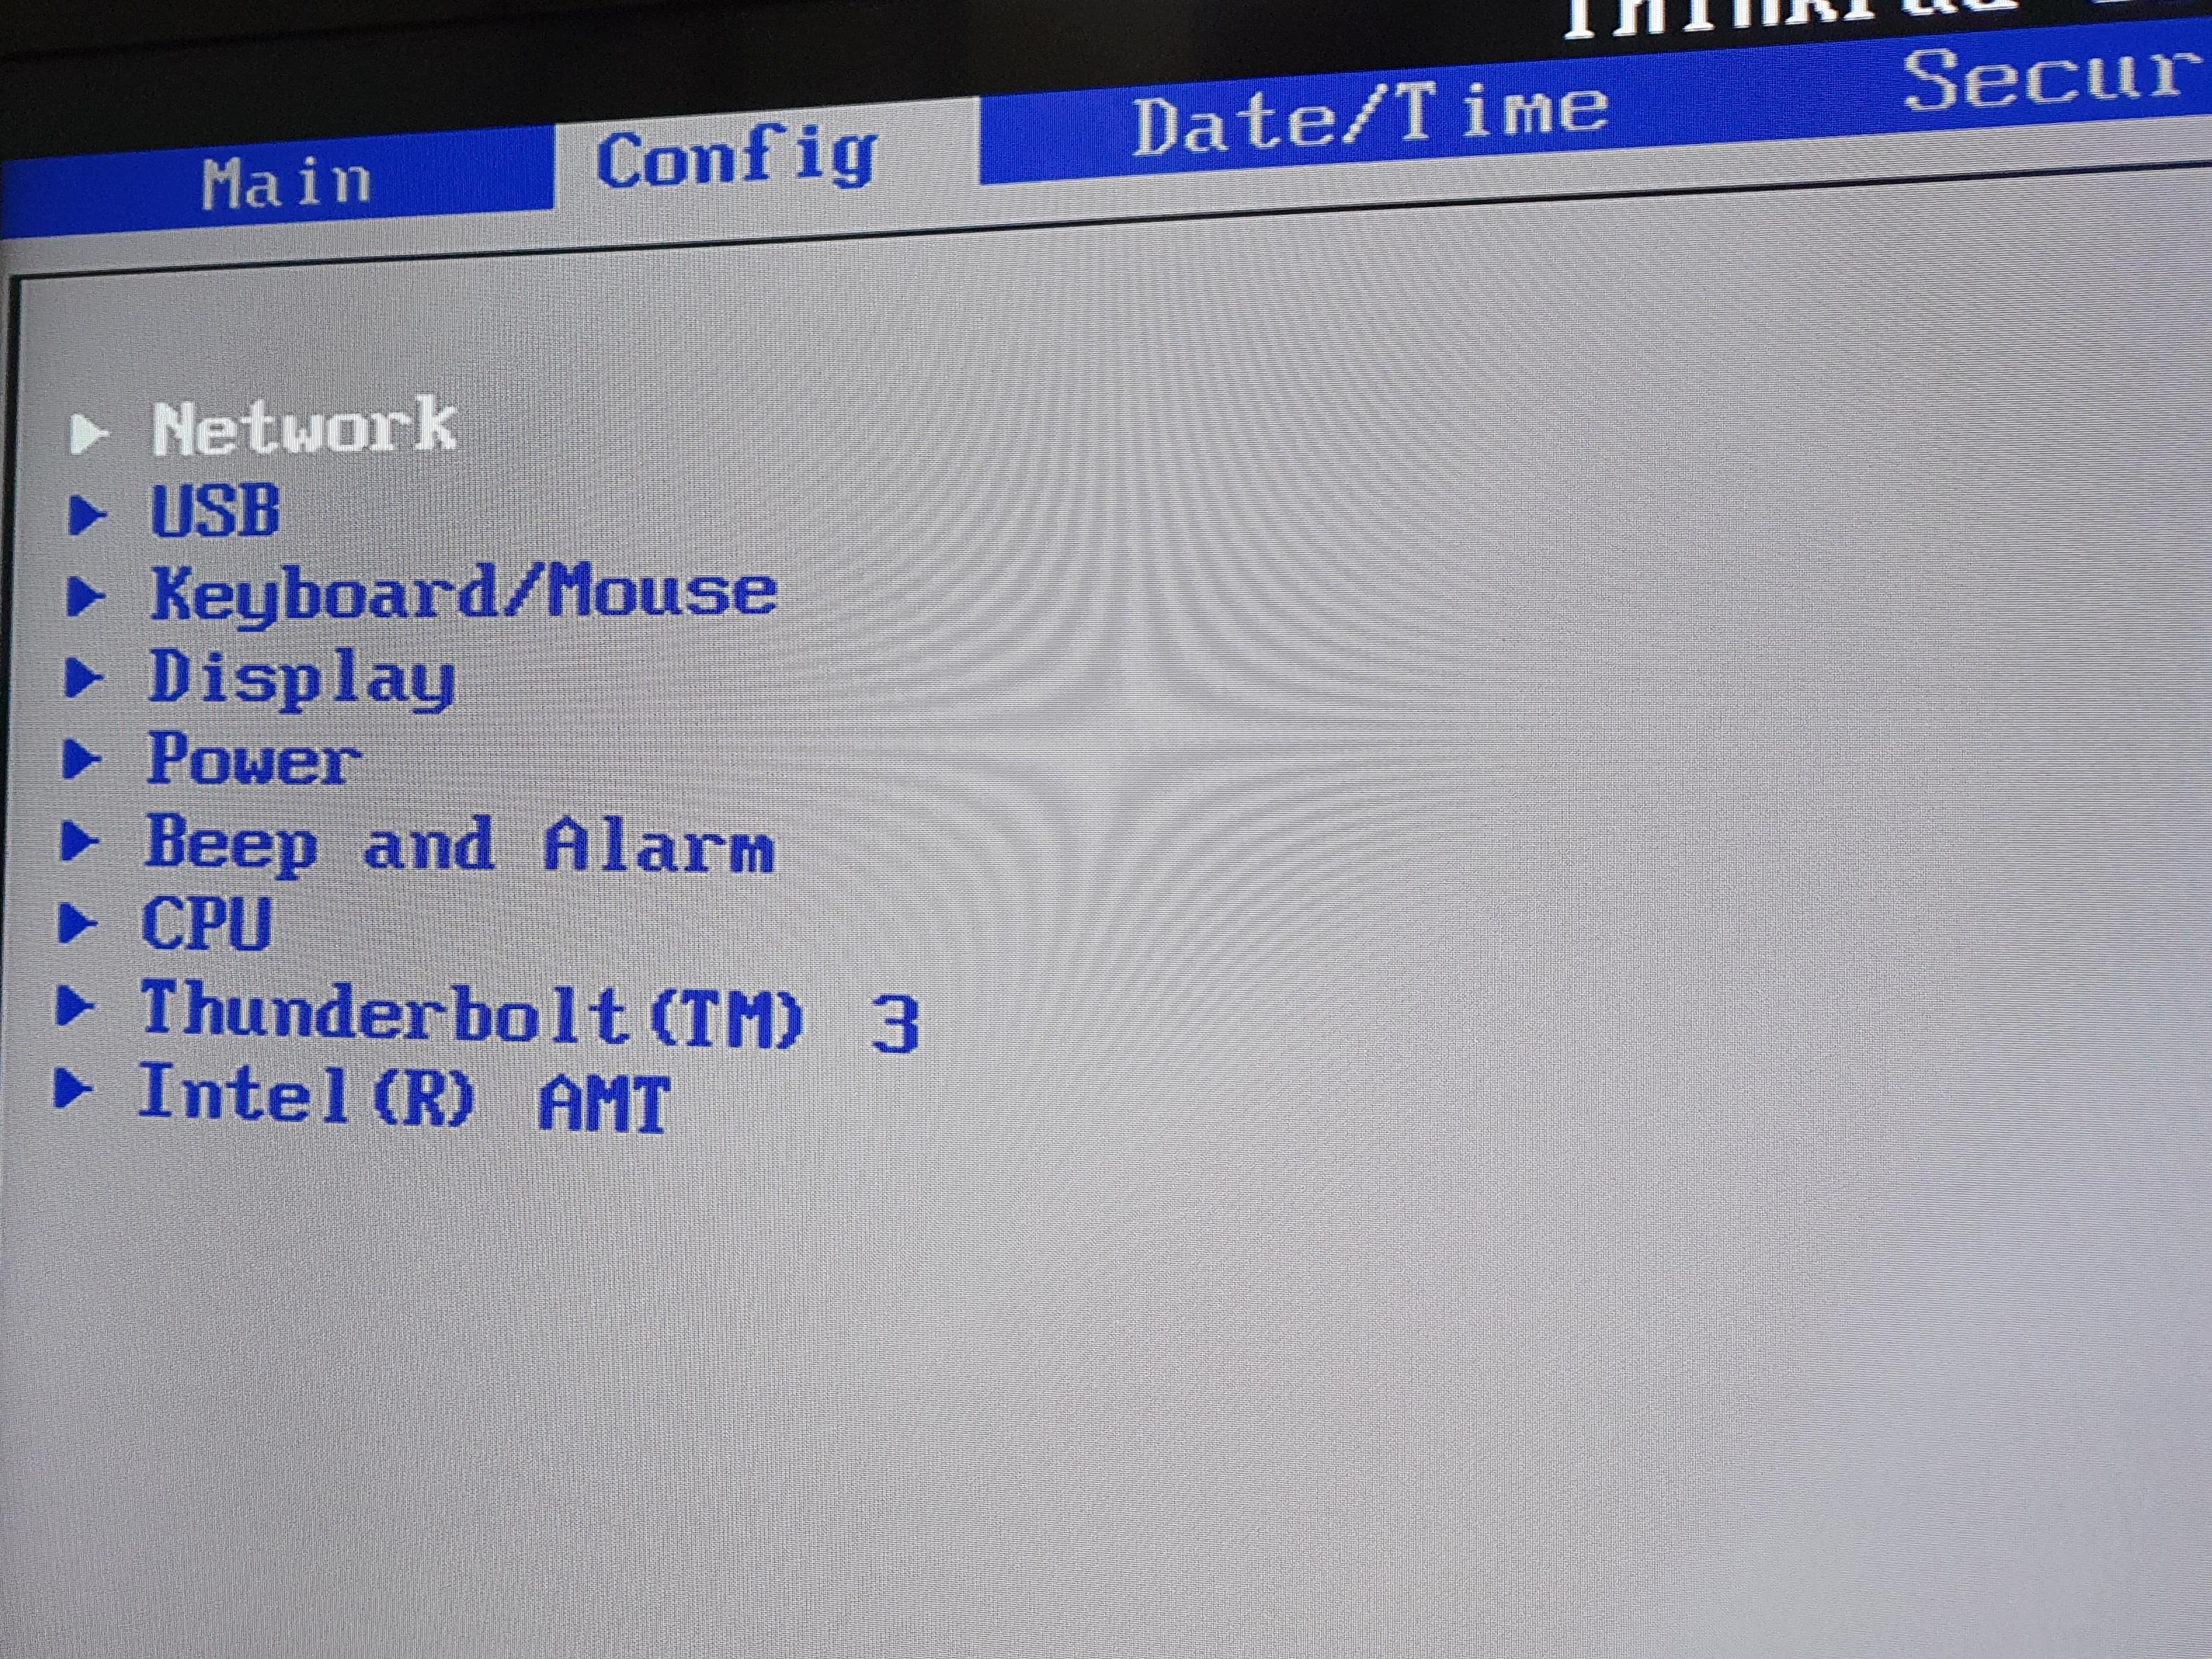 A BIOS do meu ThinkPad com a aba Config aberta. A primeira opção disponível se chama Network.